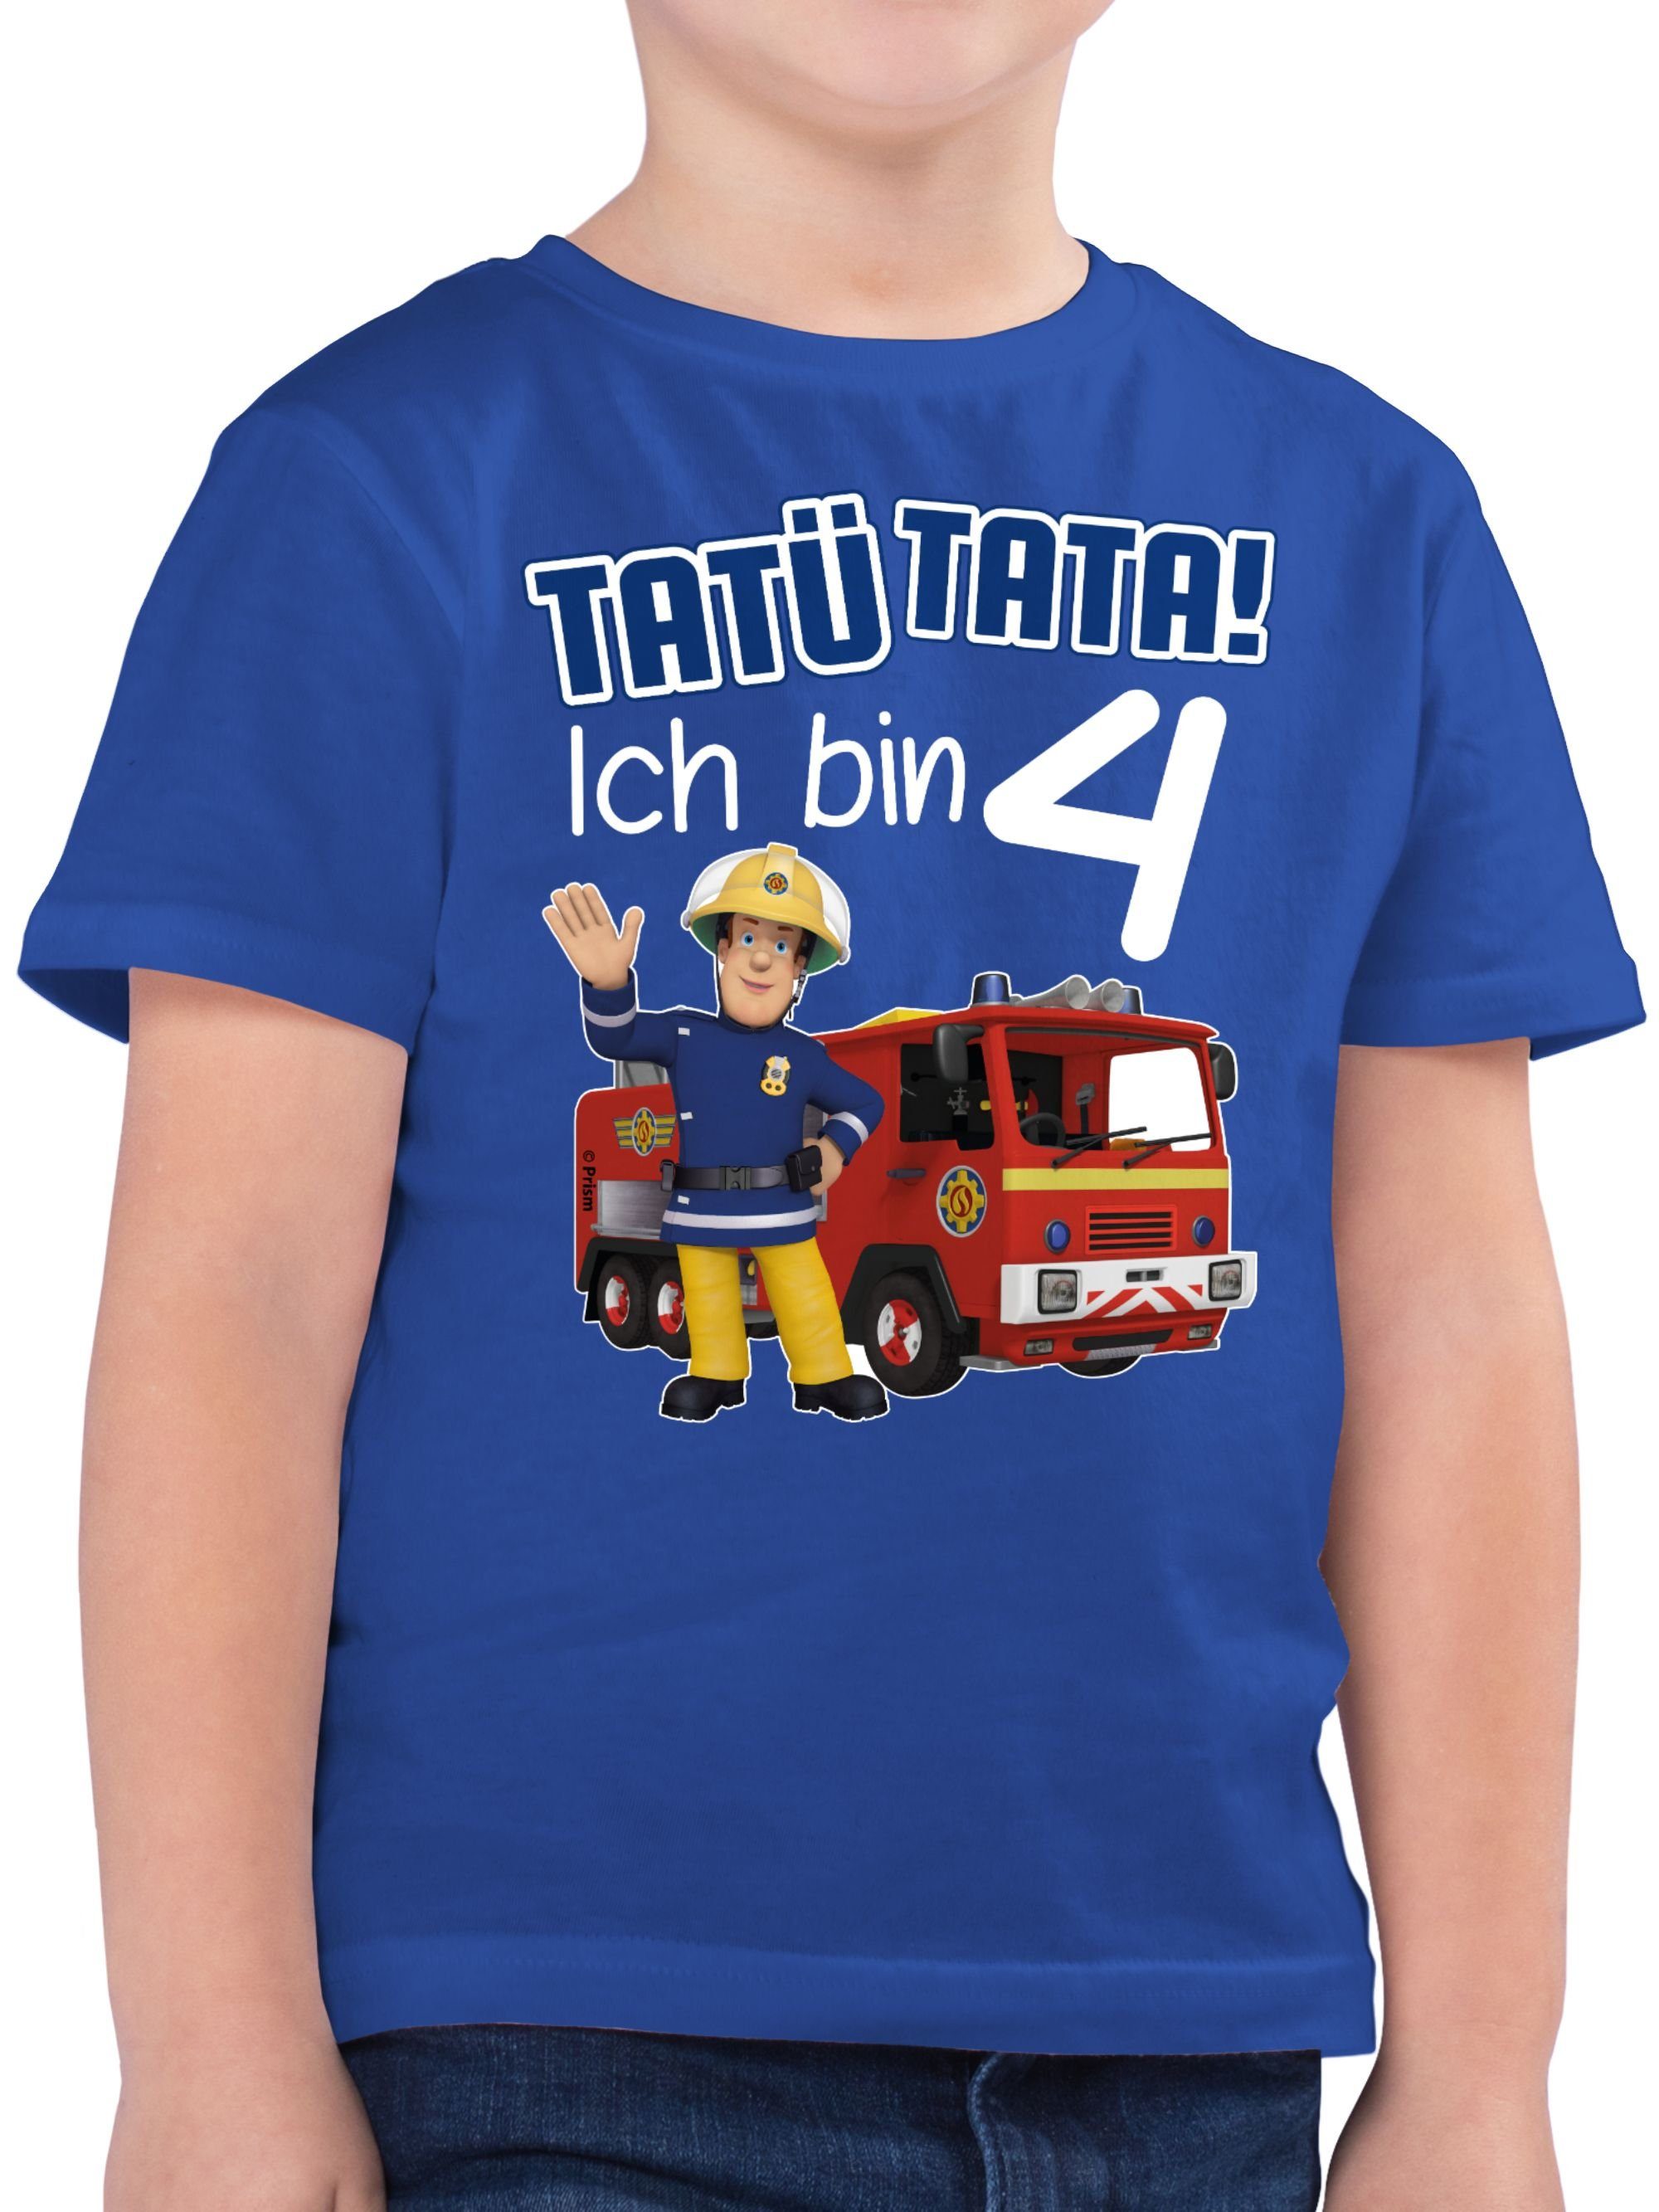 Sam Jungen Royalblau Tata! Feuerwehrmann Shirtracer 4 bin Geburtstag 02 Ich Tatü T-Shirt